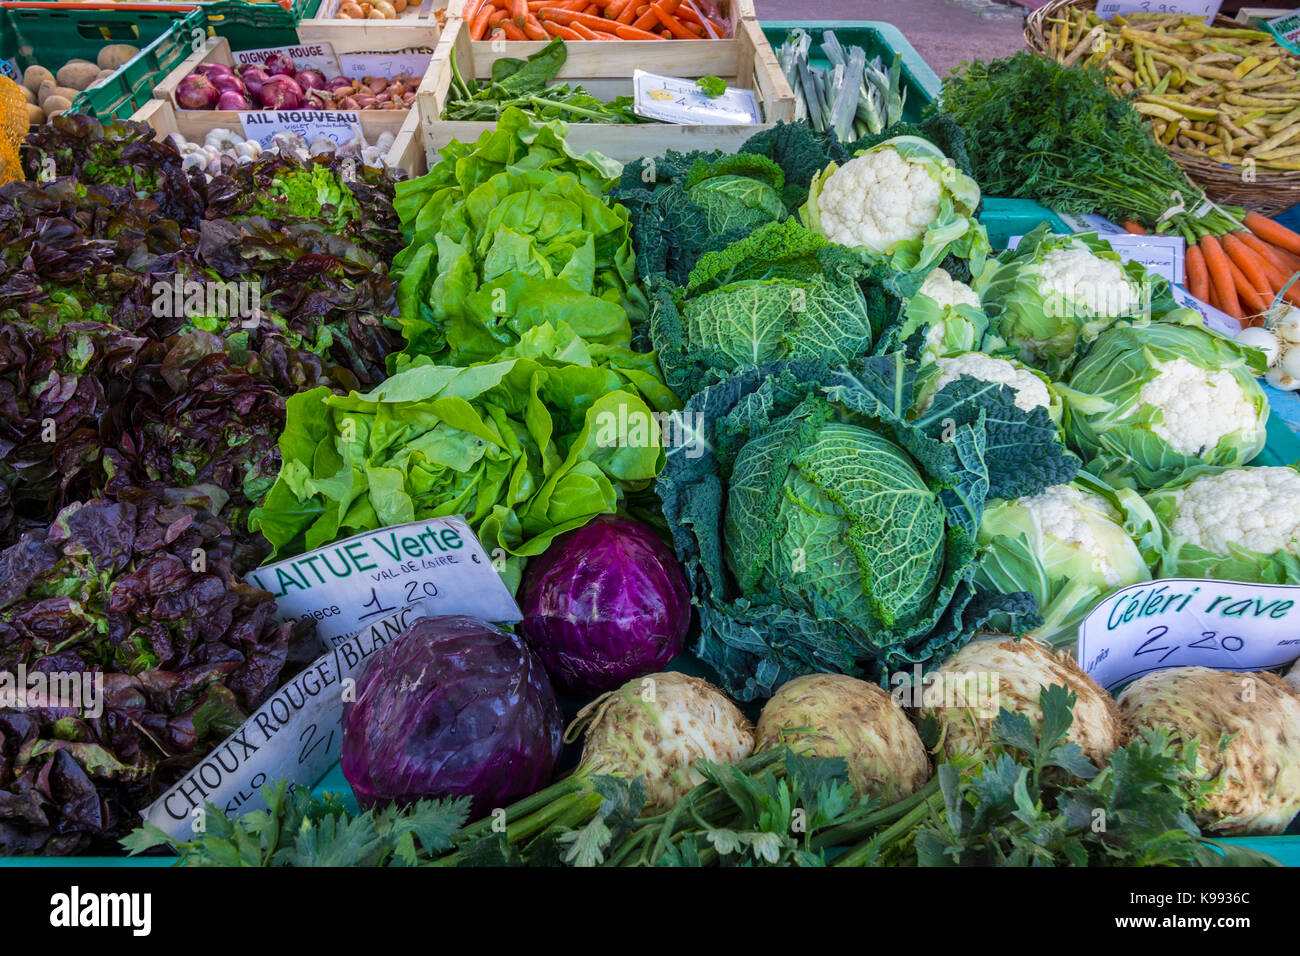 Fresh vegetables on market stall, France. Stock Photo